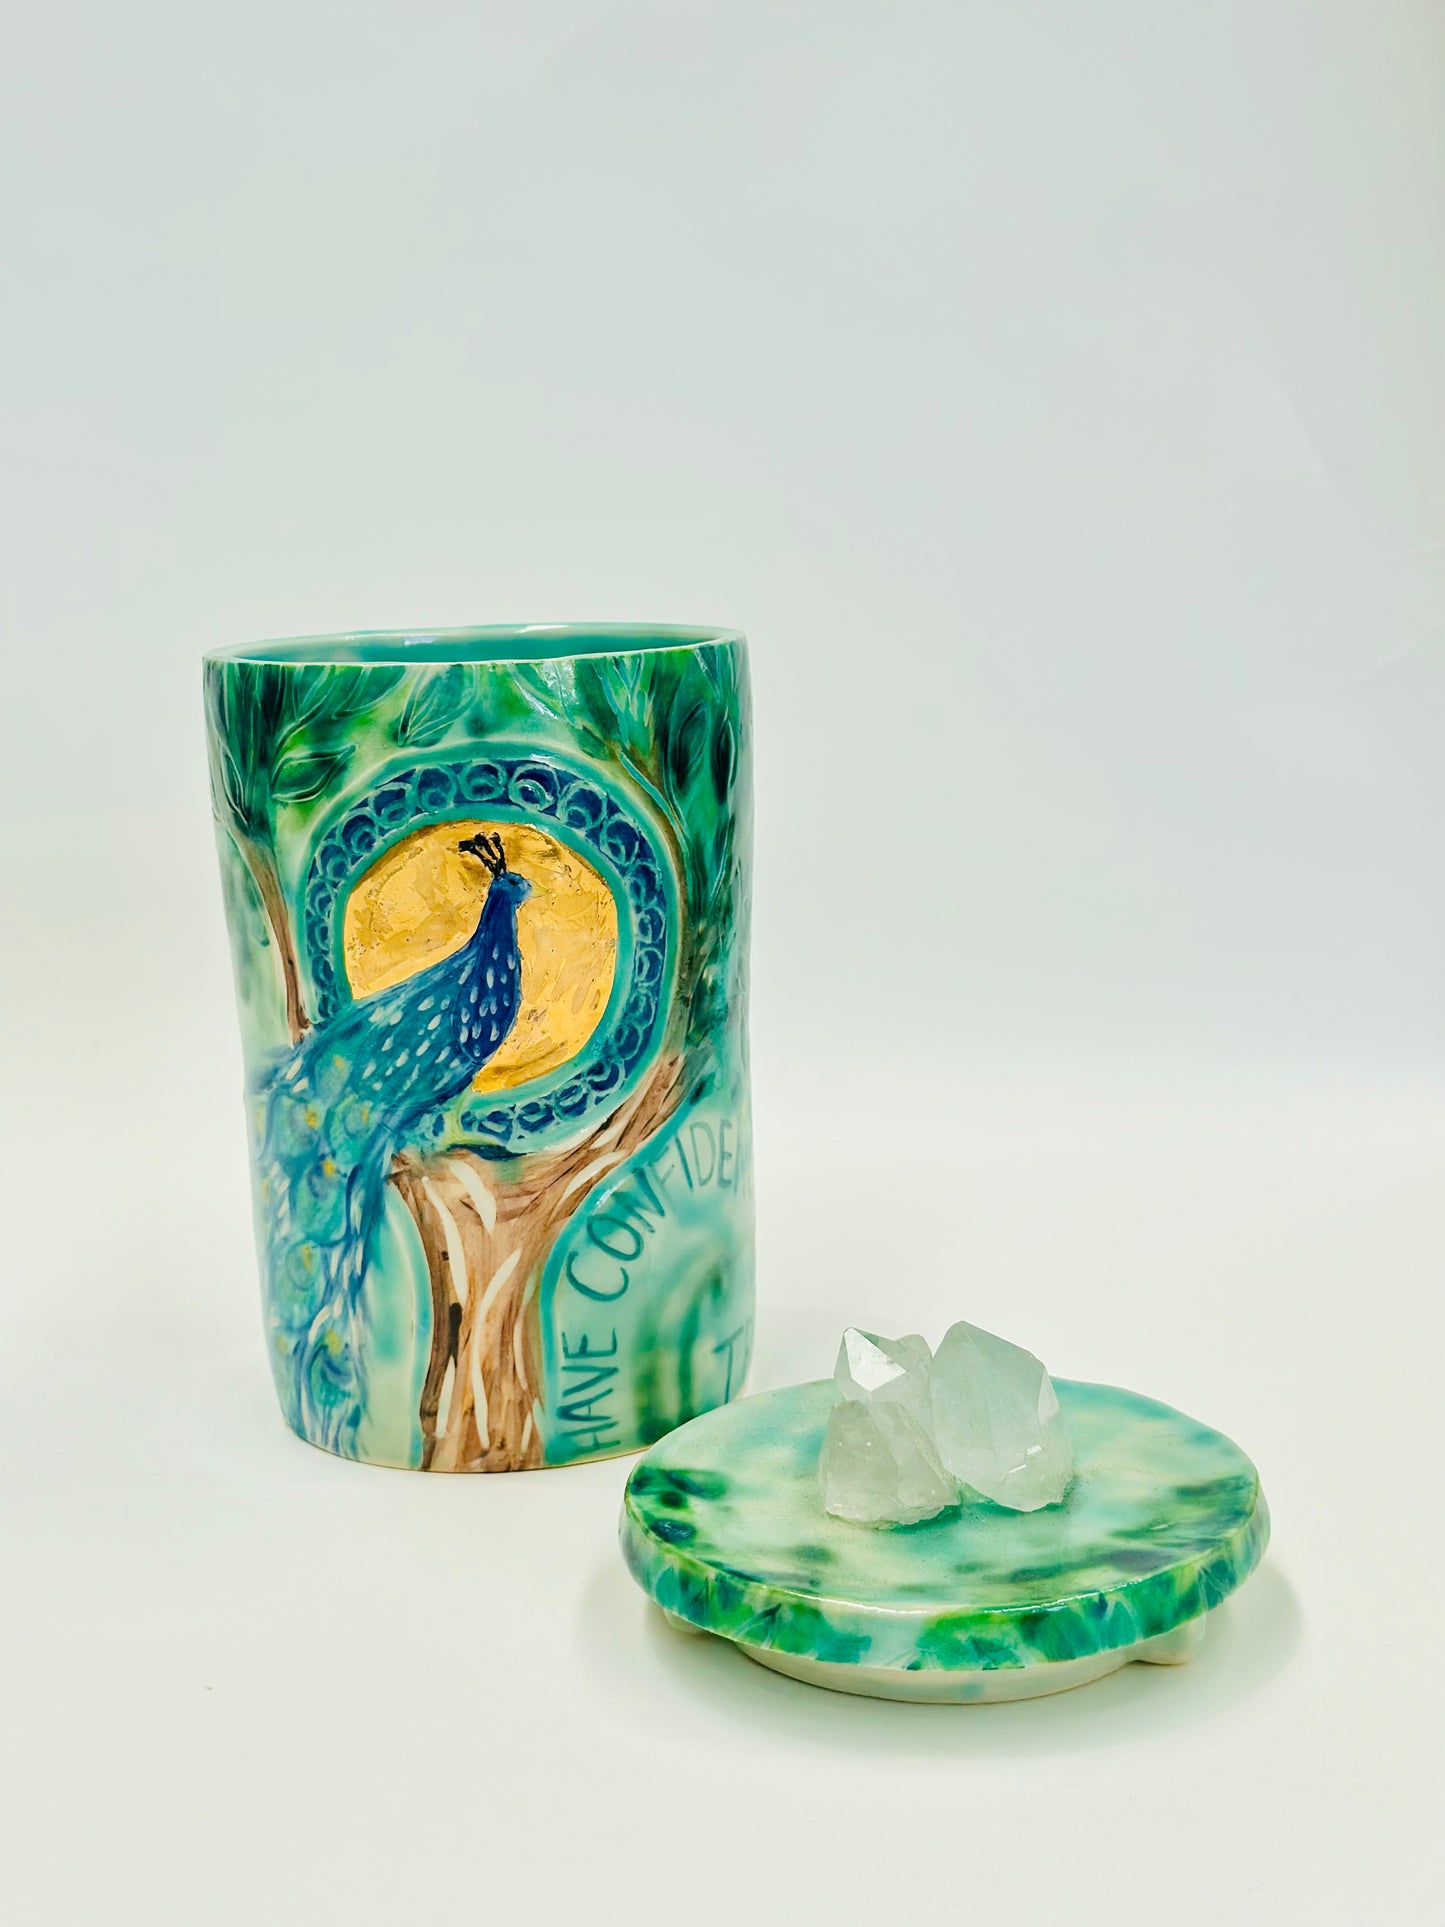 Peacock Vase with quartz